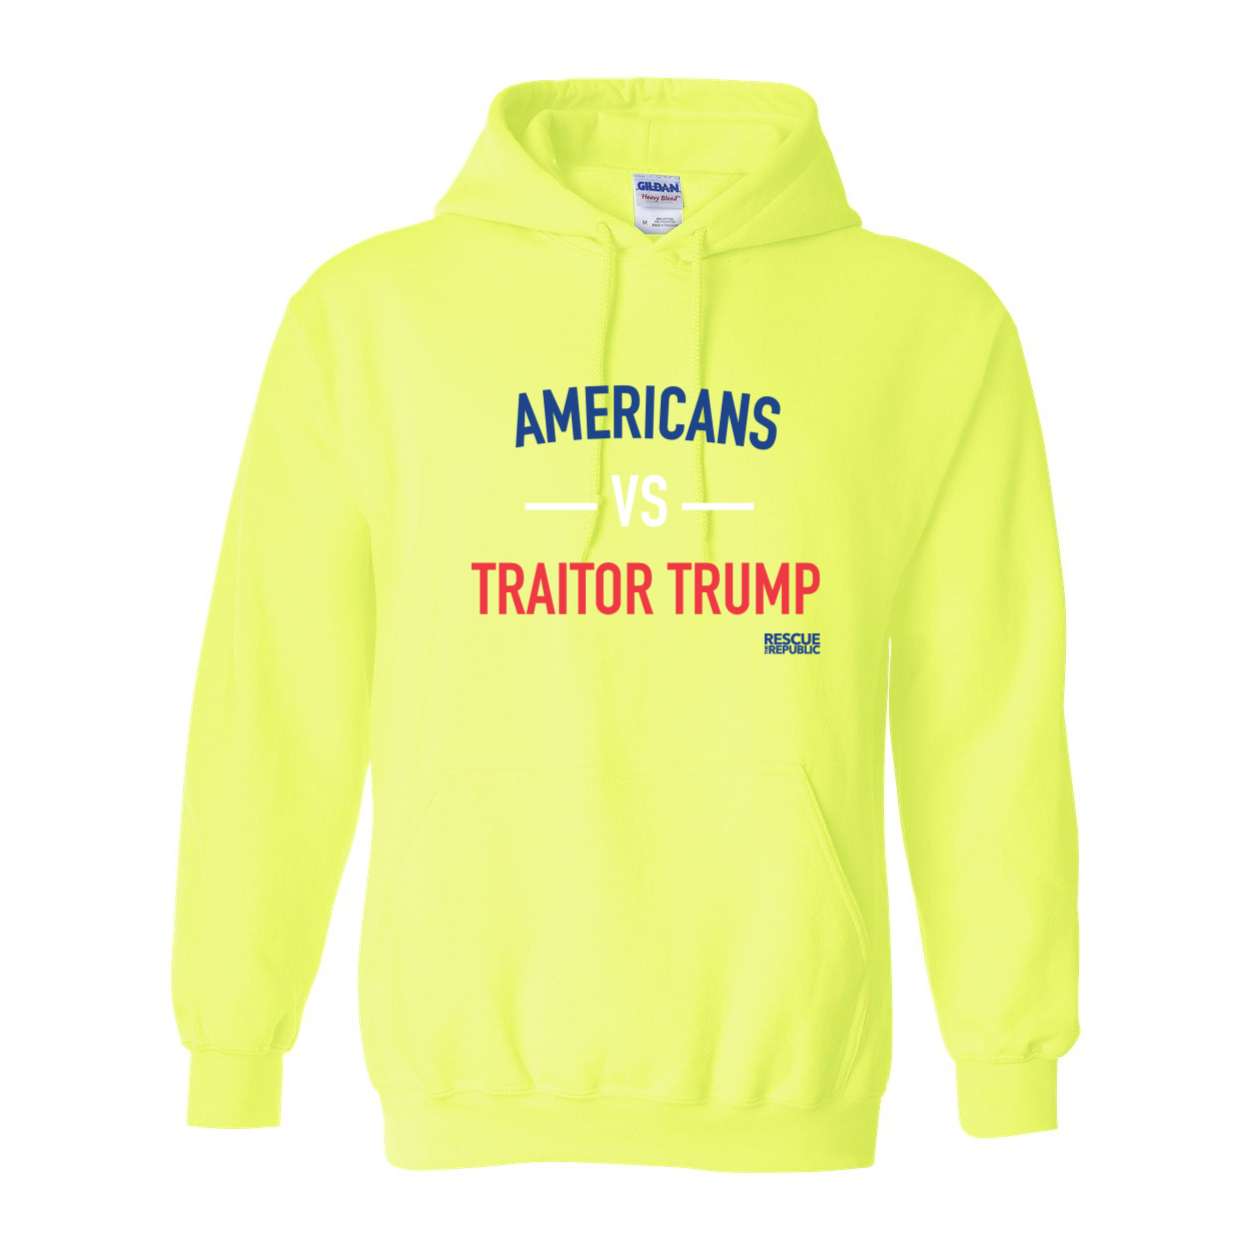 Americans VS Traitor Trump Hoodie Sweatshirt